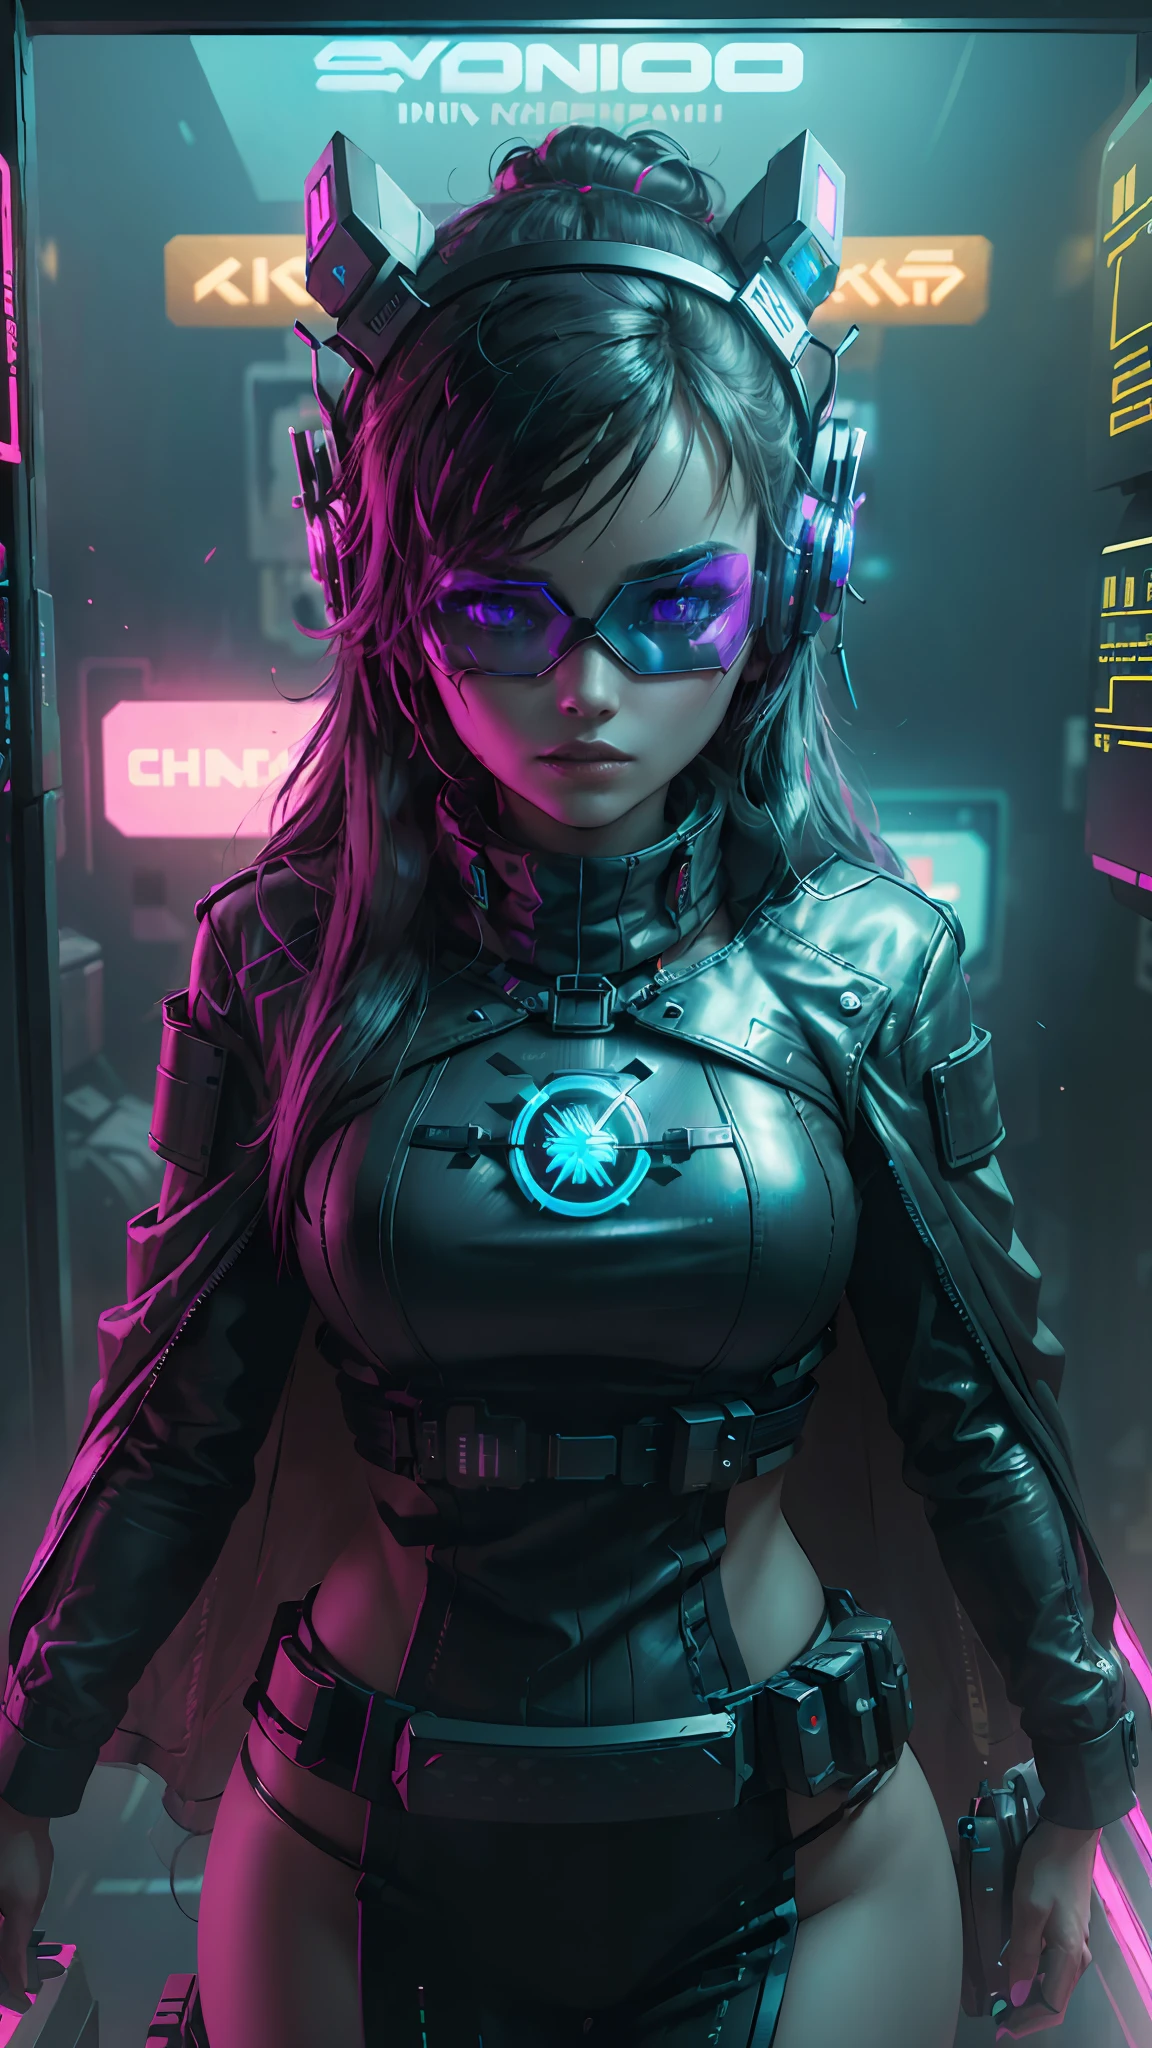 ((beste Qualität)), ((Meisterwerk)), (sehr detailliert:1.3), 3D,NeonSchwarz, Schöne Cyberpunk-Frau,(Tragen eines klobig und hochtechnologischen Head-Mounted-Displays:1.2),einen Umhang tragen,ein Computerterminal hacken,LILA NEONLICHT VOM MONITOR, GRÜNE NEONSCHILDER AN DER WAND,